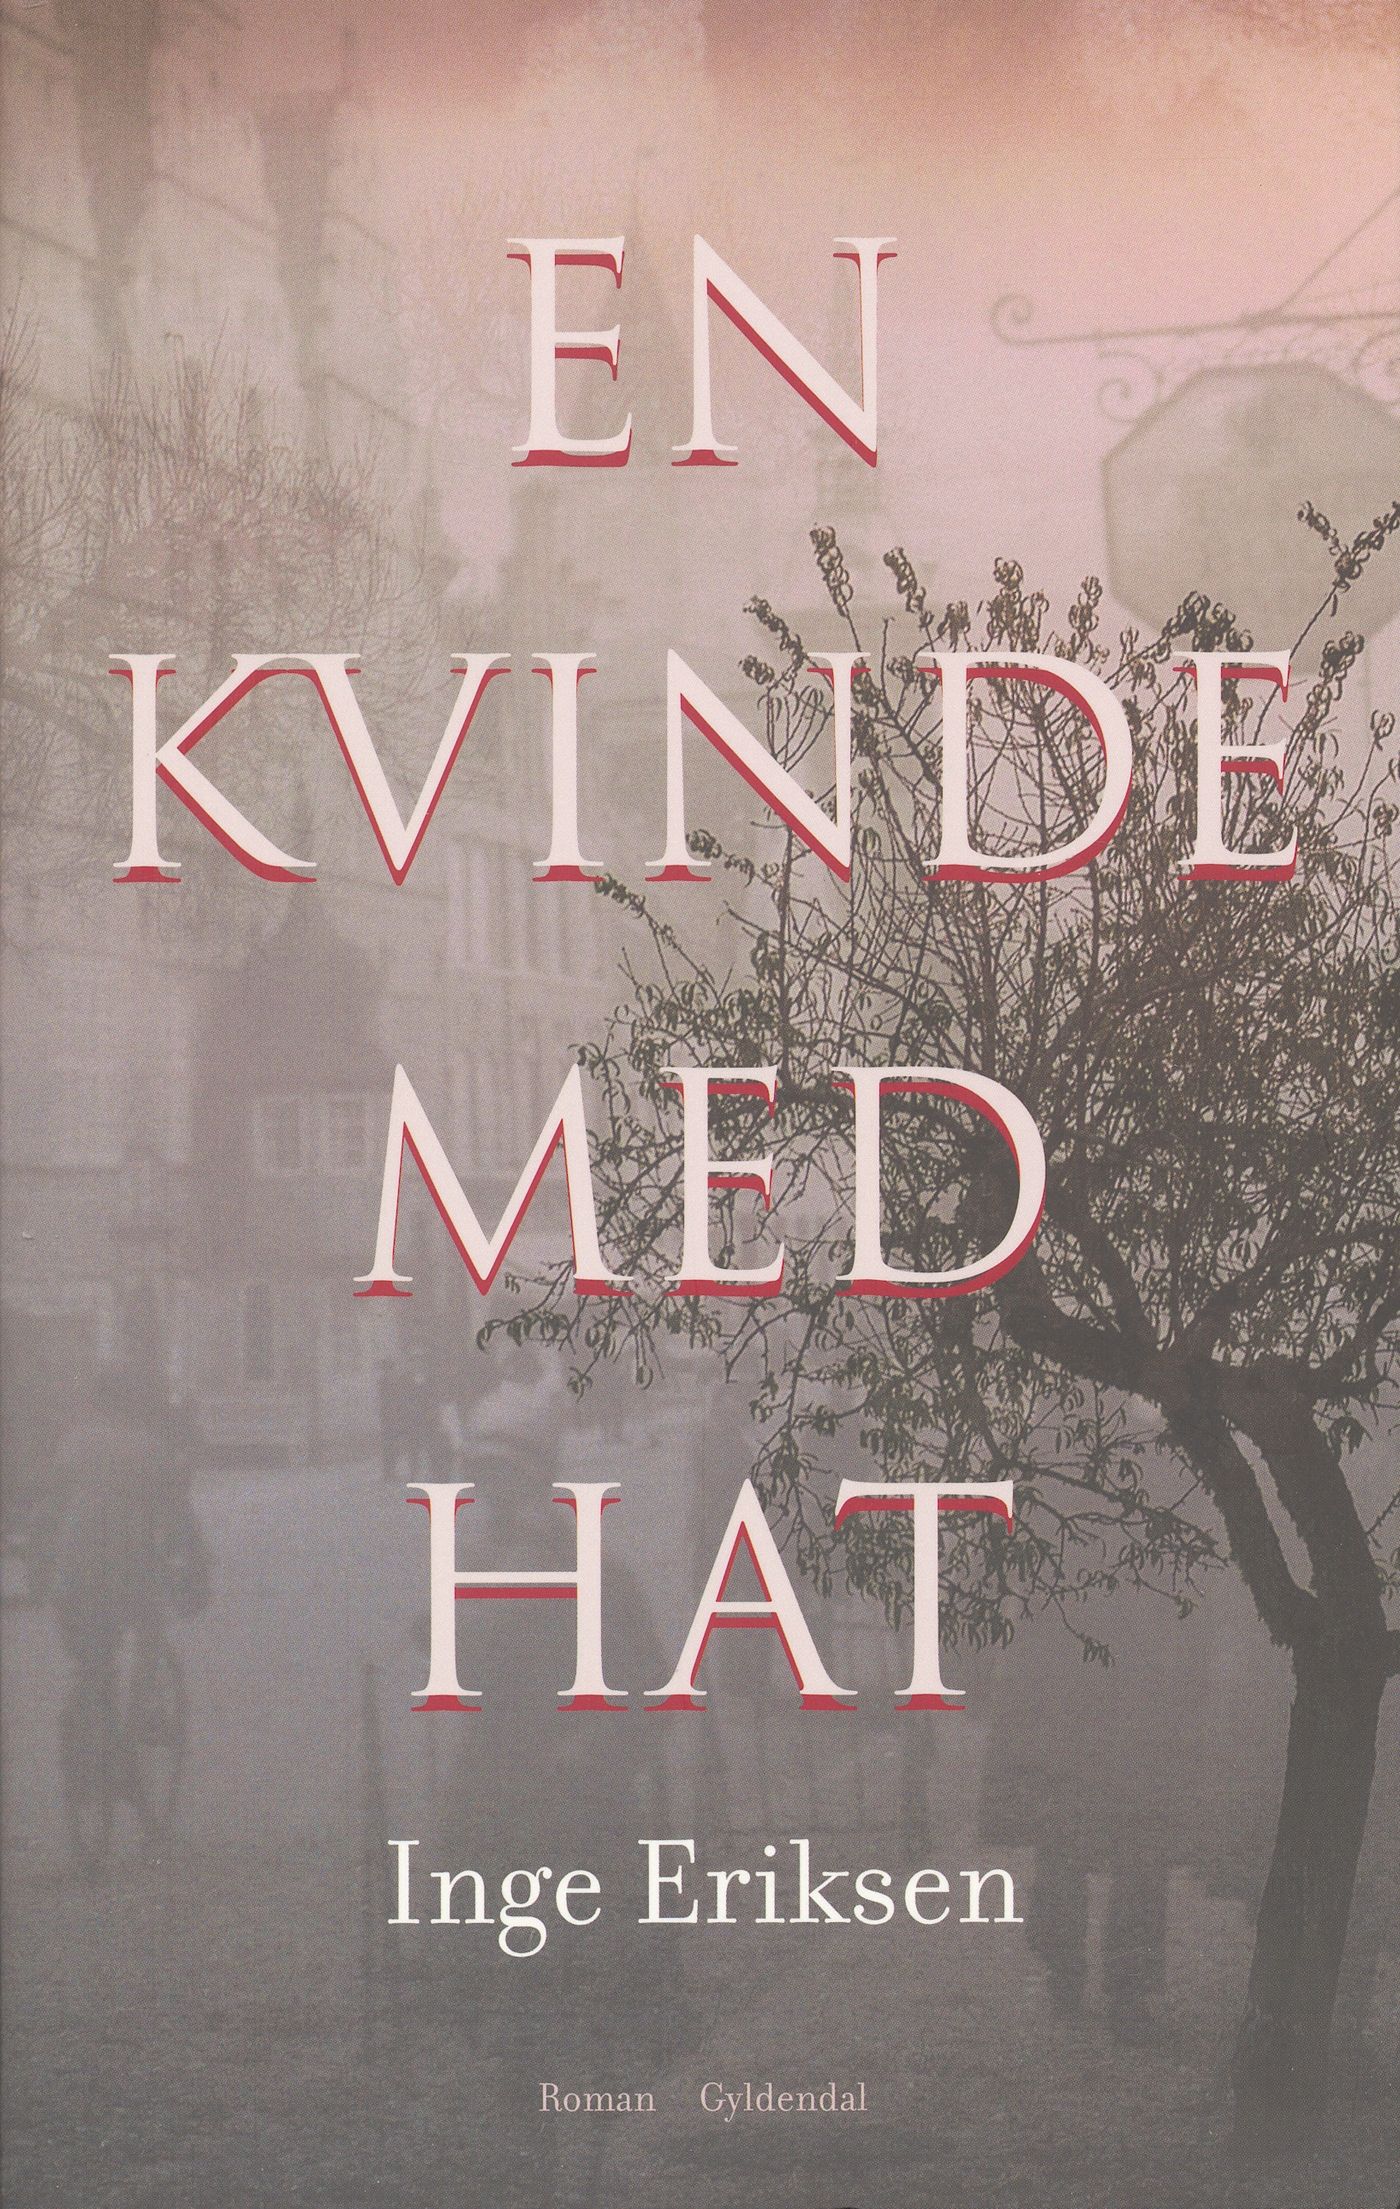 En kvinde med hat, e-bok av Inge Eriksen